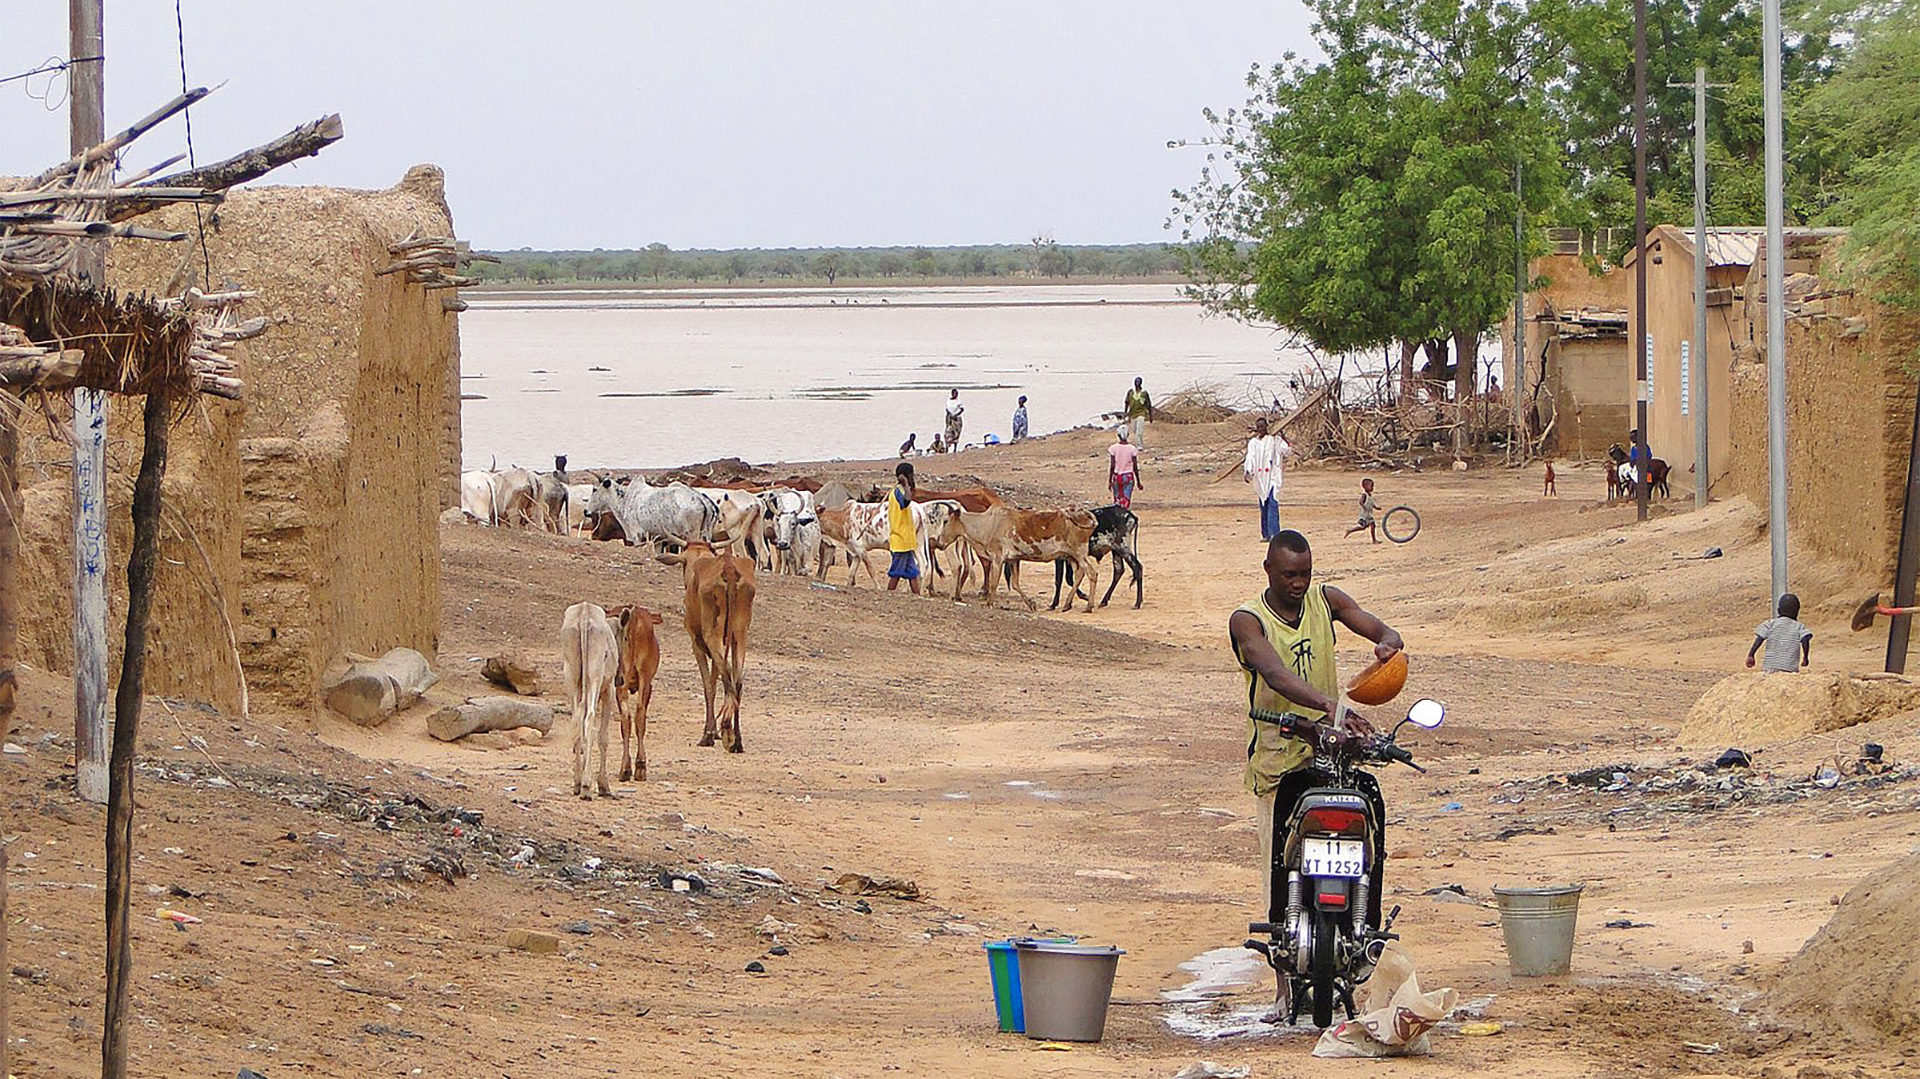 La région du Sahel reste l'une des plus pauvre du monde | Wiki Commons - A. Johns - CC BY-SA 3.0